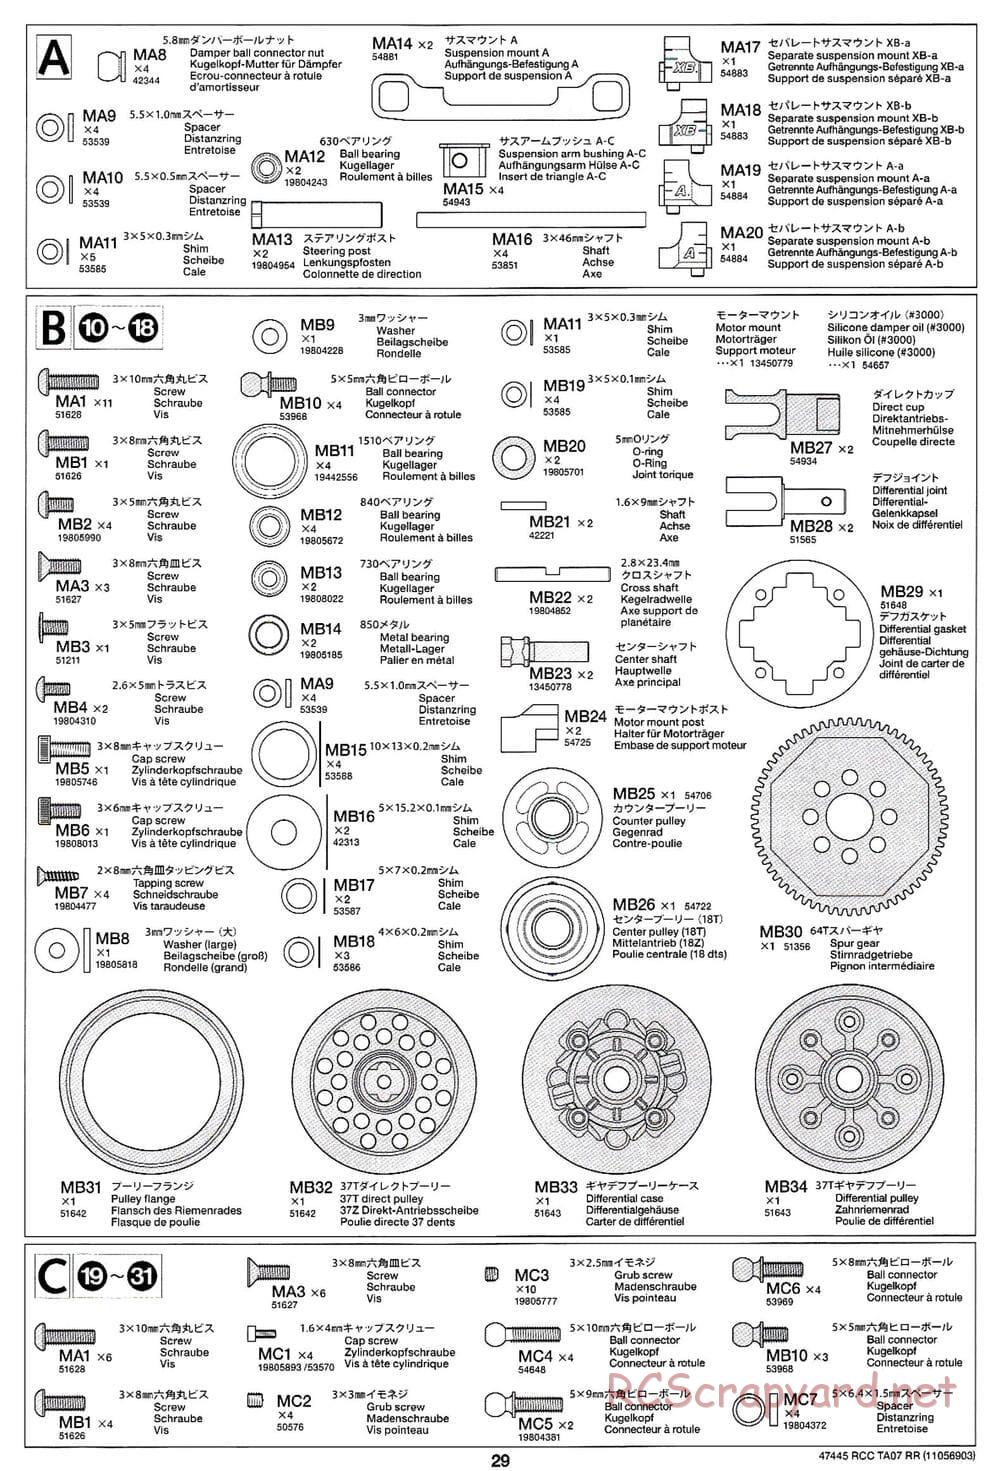 Tamiya - TA07 RR Chassis - Manual - Page 29